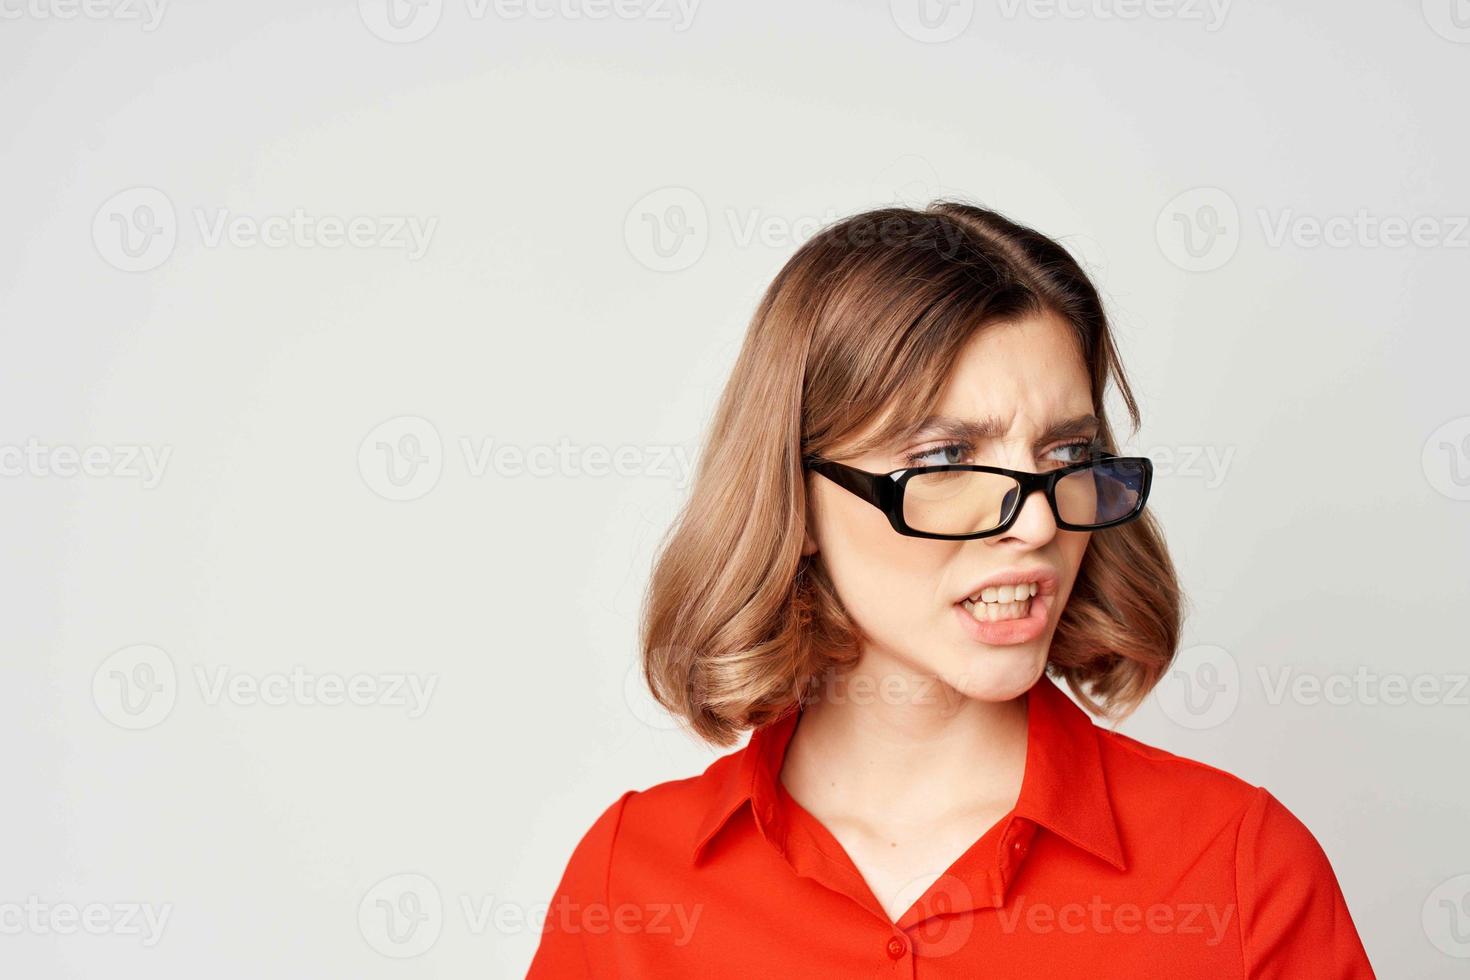 Geschäft Frau im rot Hemd Job Manager Exekutive foto